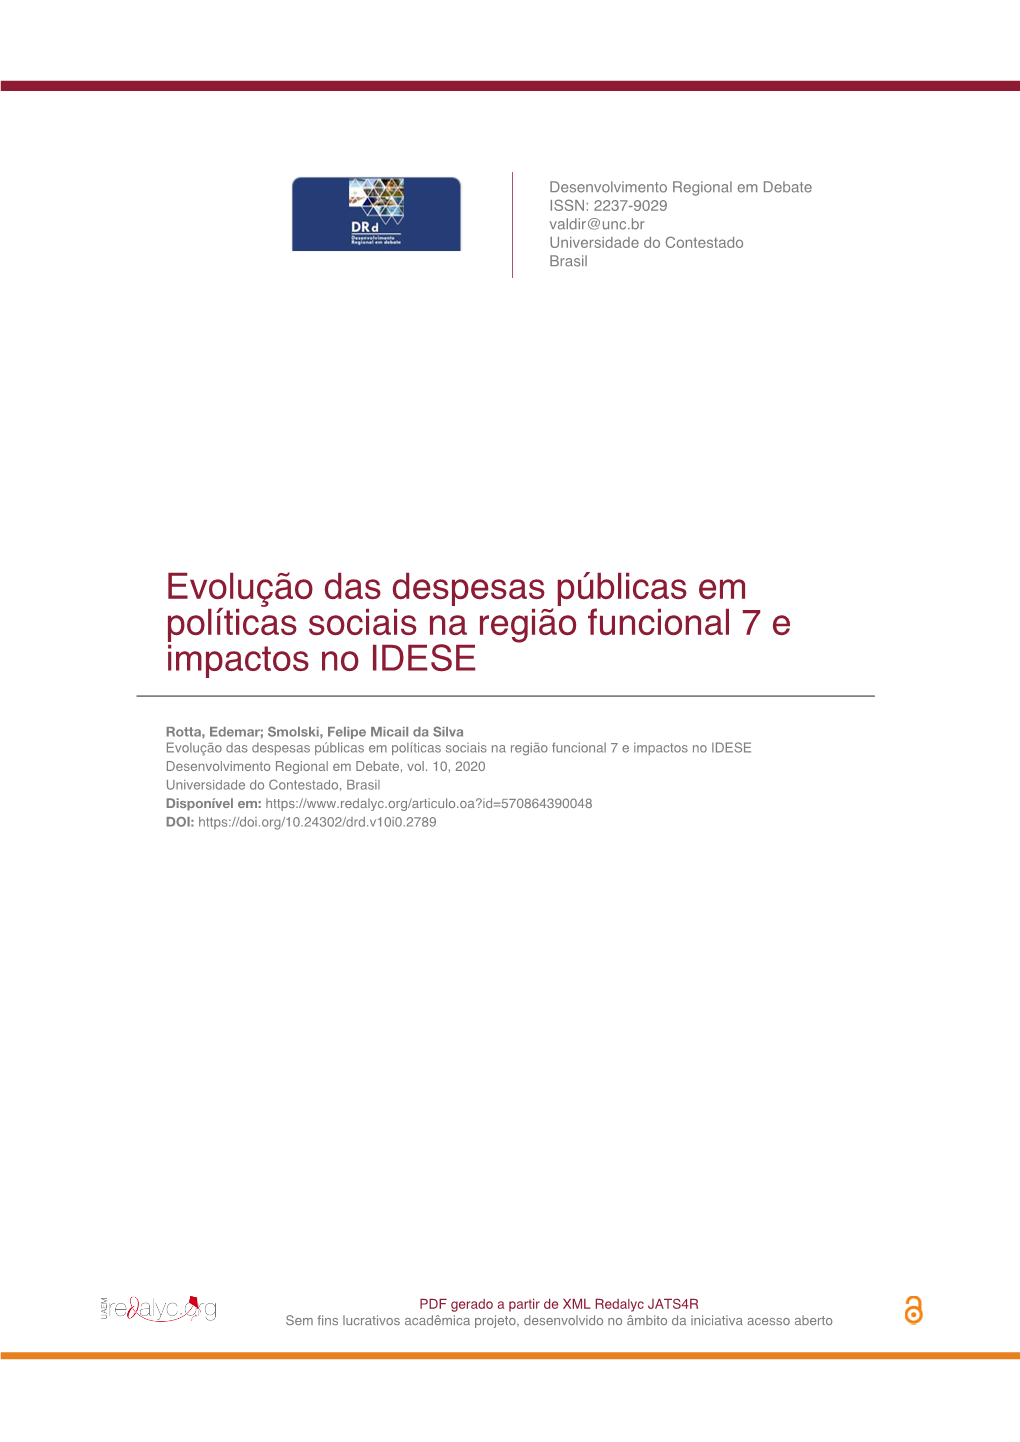 Evolução Das Despesas Públicas Em Políticas Sociais Na Região Funcional 7 E Impactos No IDESE